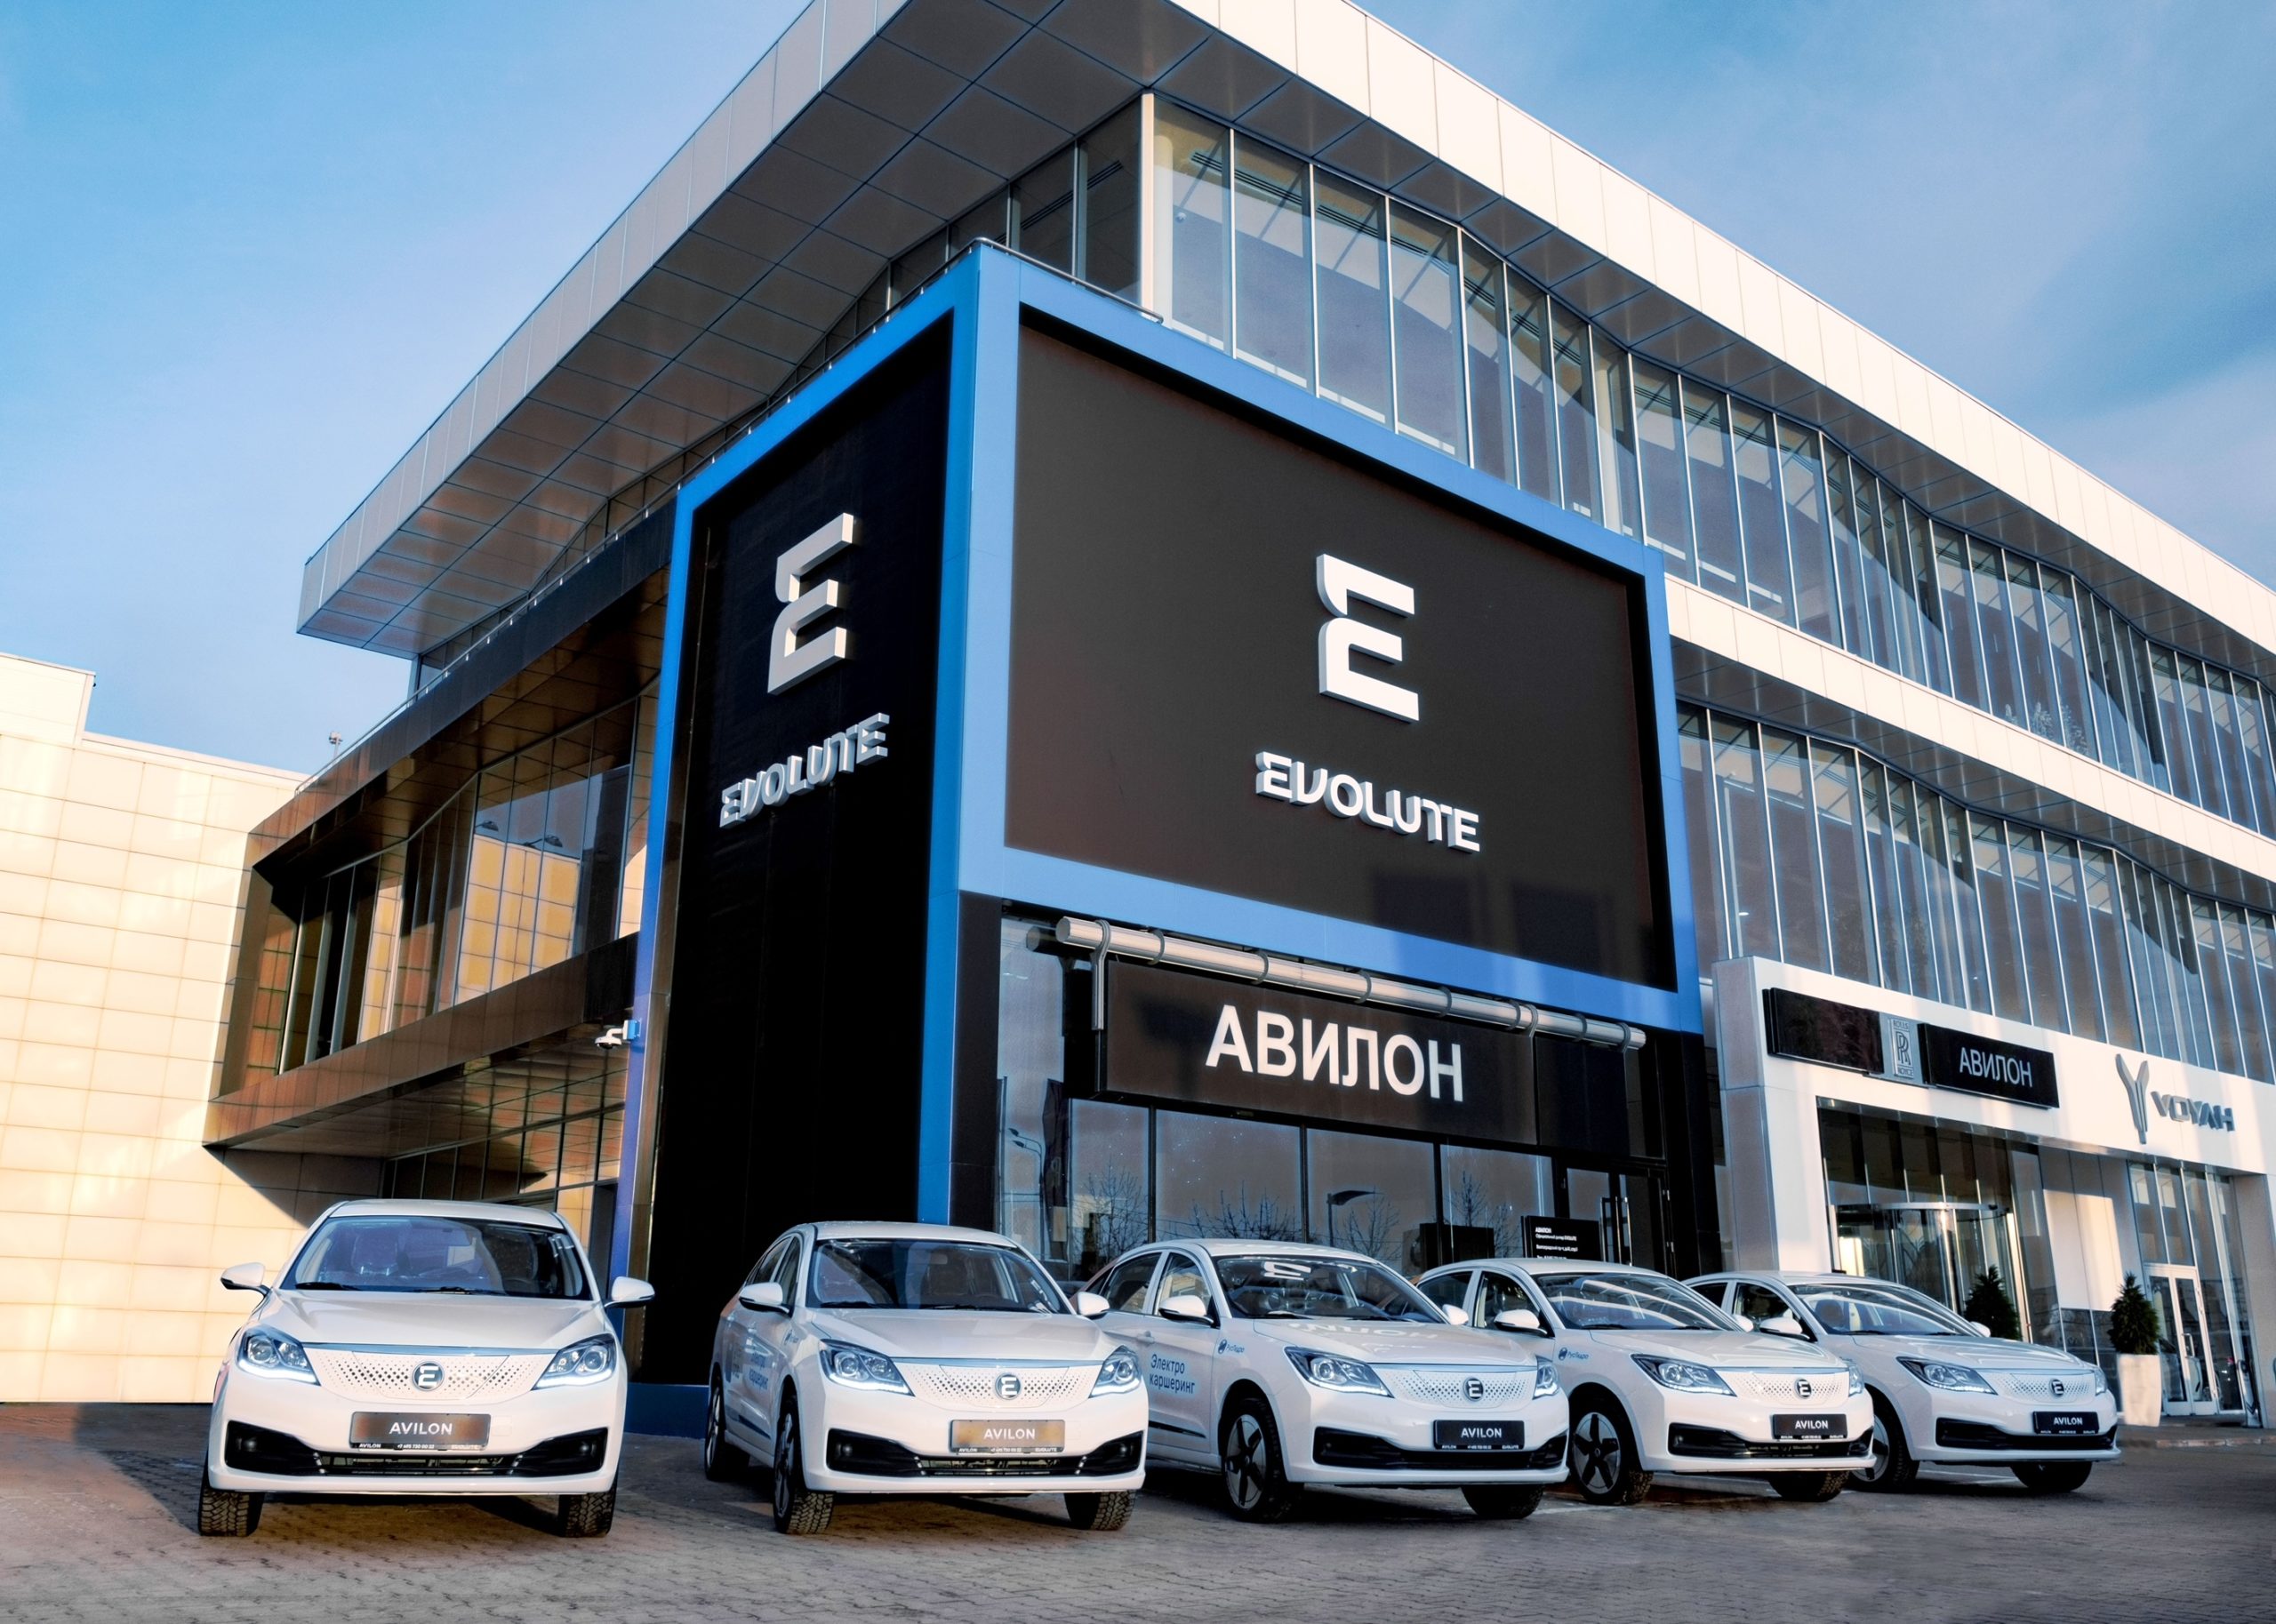 95 электромобилей EVOLUTE передали для каршеринга в Приморский край